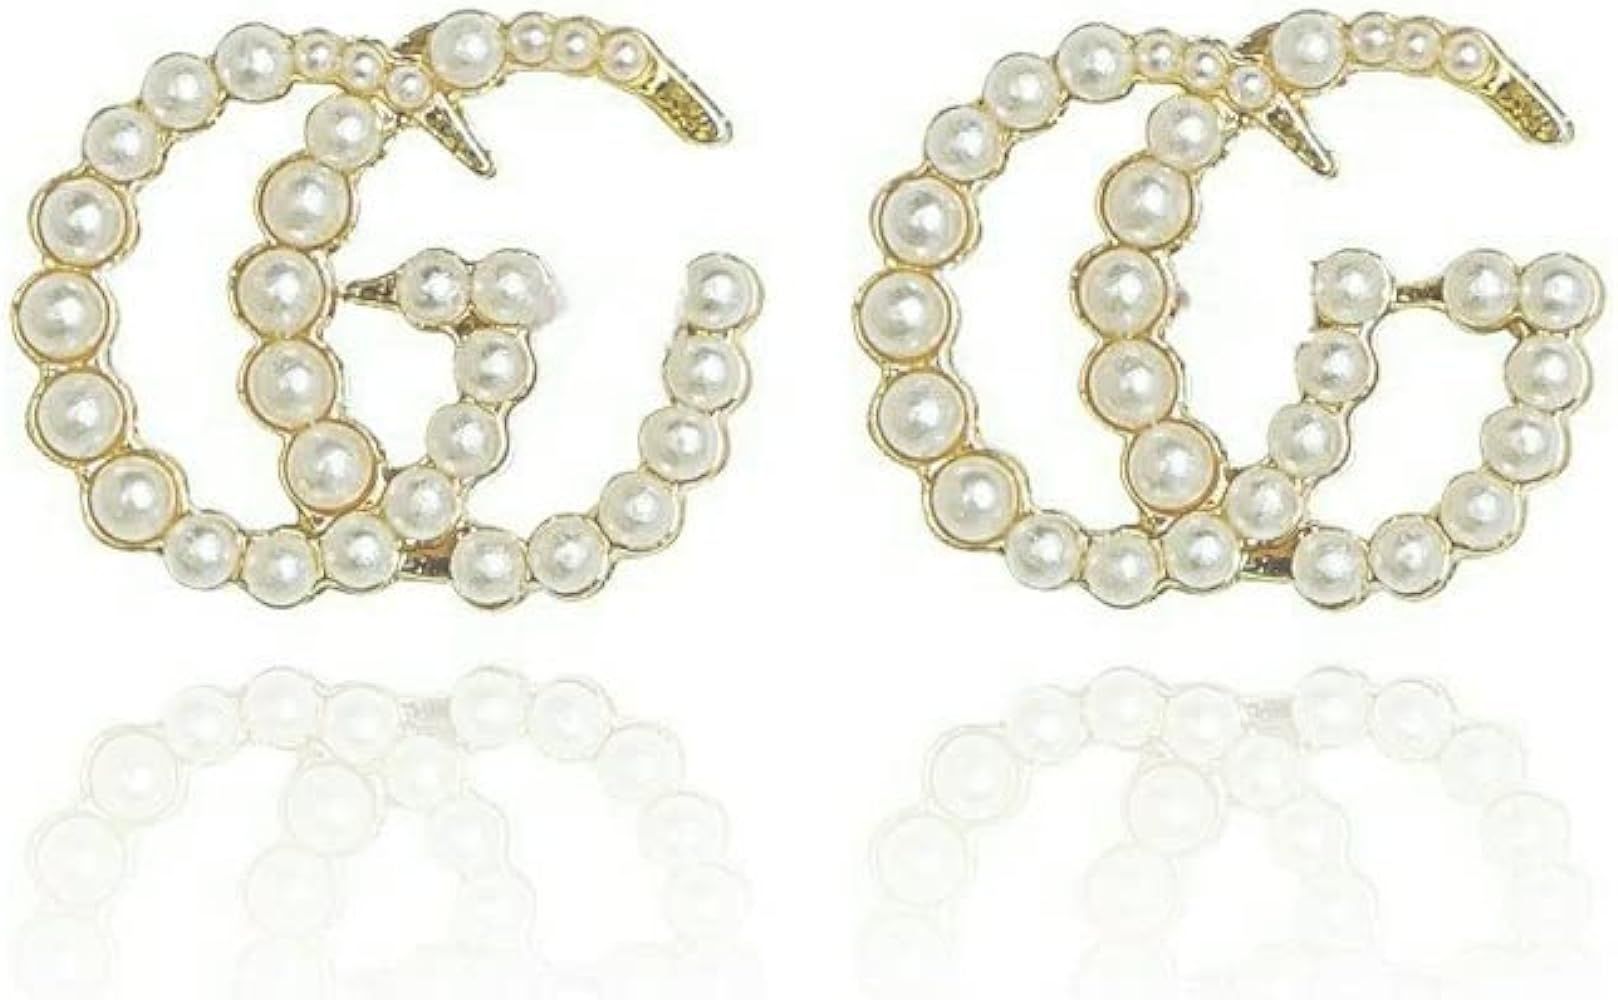 gg earrings for women Pearl Stud Earrings for Women GG EARRINGS Initial G Pearl Stud Earrings Fashio | Amazon (US)